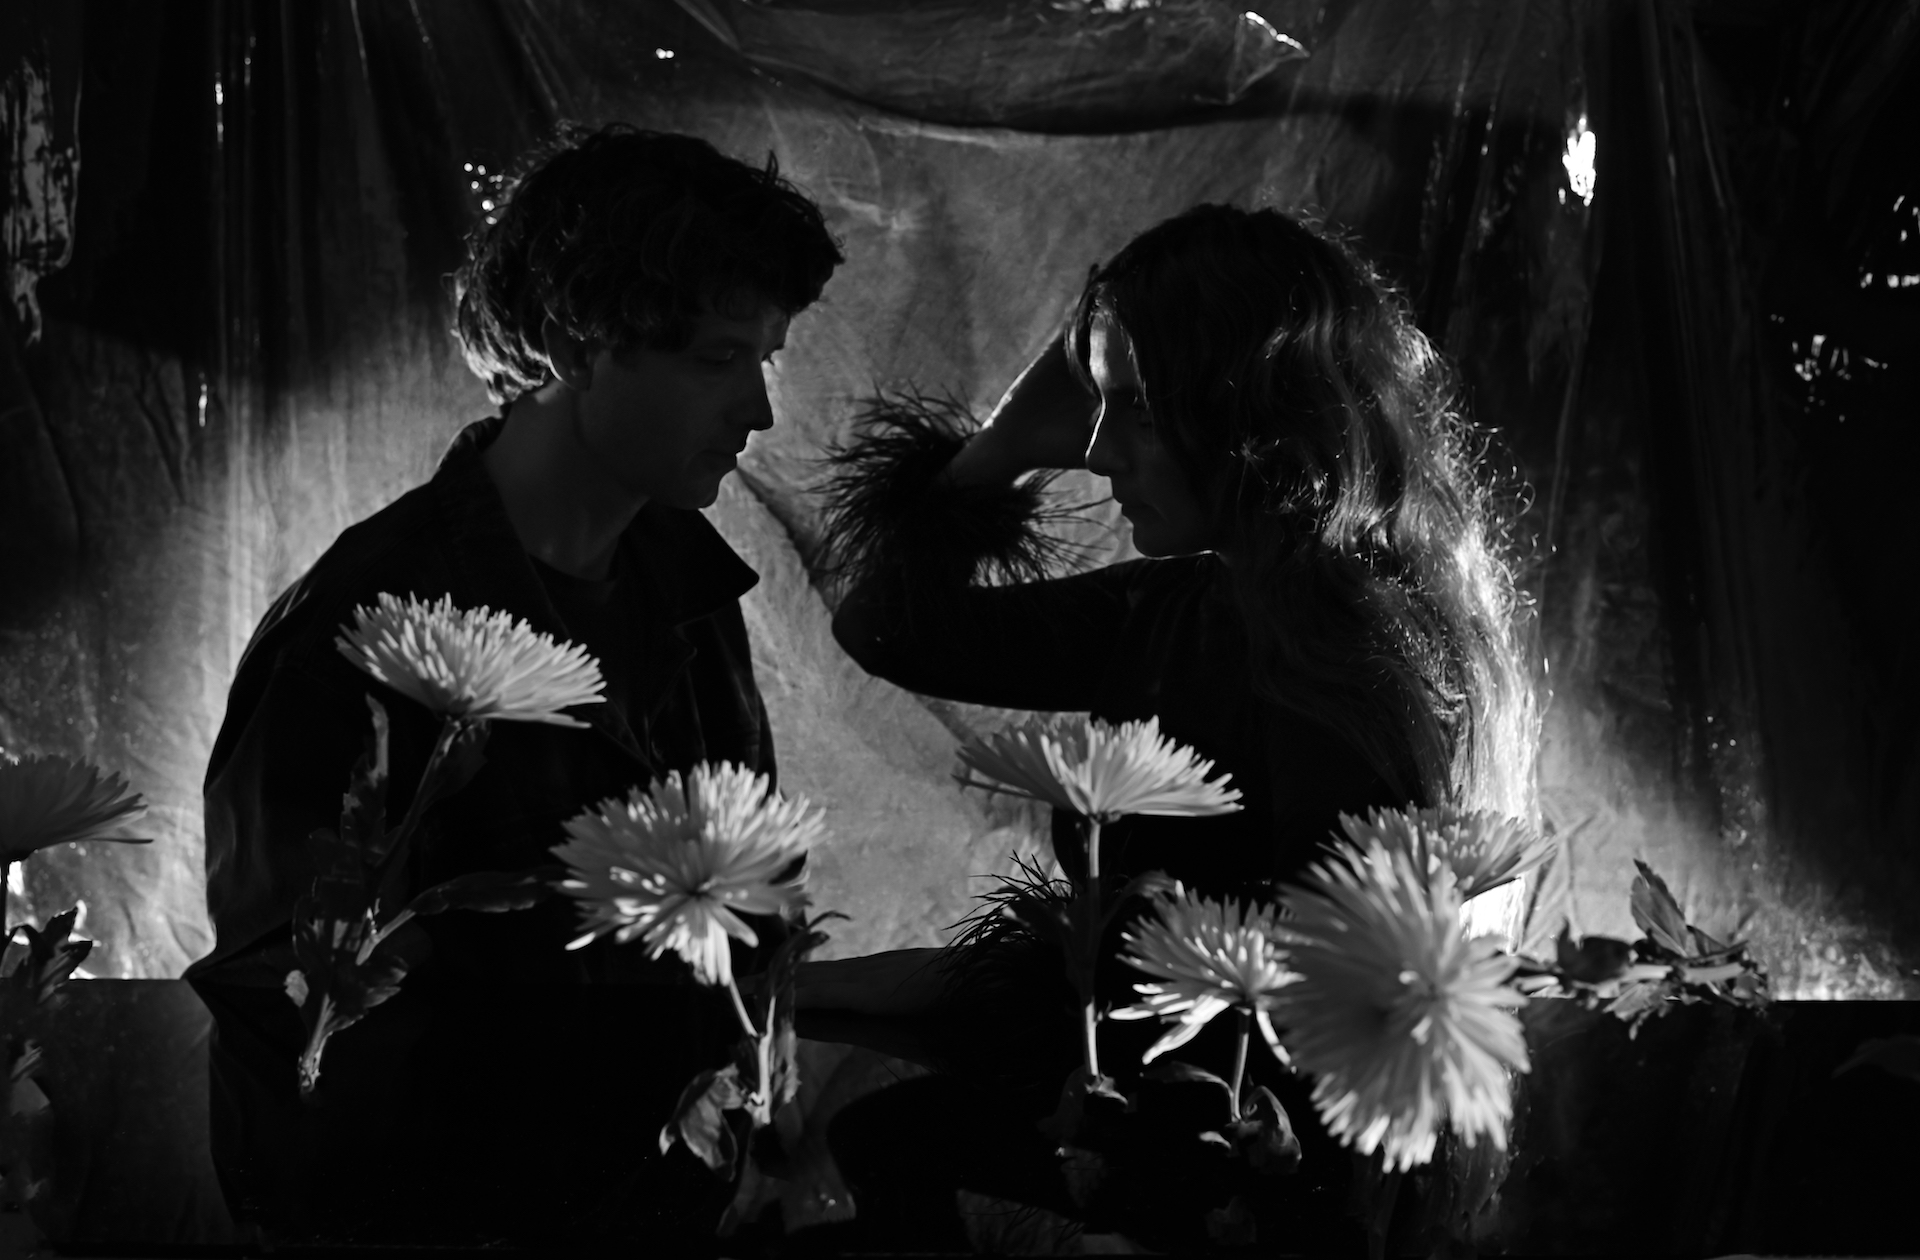 Das Duo Beach House ist anlässlich des neuen Albums „Once Twice Melody“ in einer Schwarz-Weiß-Aufnahme zu sehen, hinter weißen Blumen stehend.